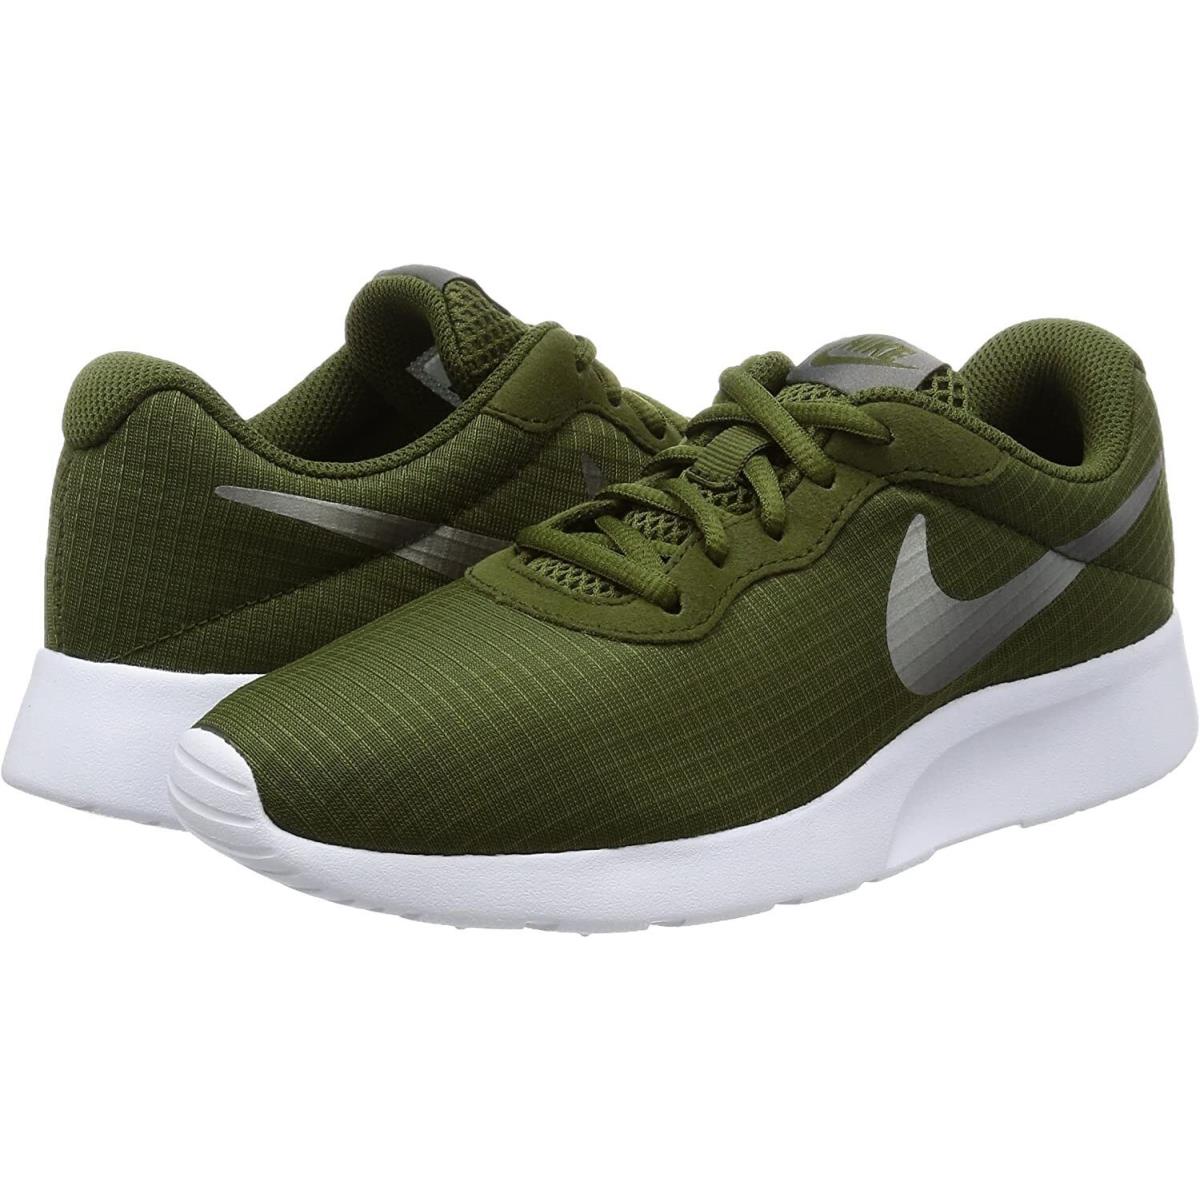 Nike Tanjun SE BR Running Shoe Camo Green 844908-302 Women`s Size 5.5 - Green